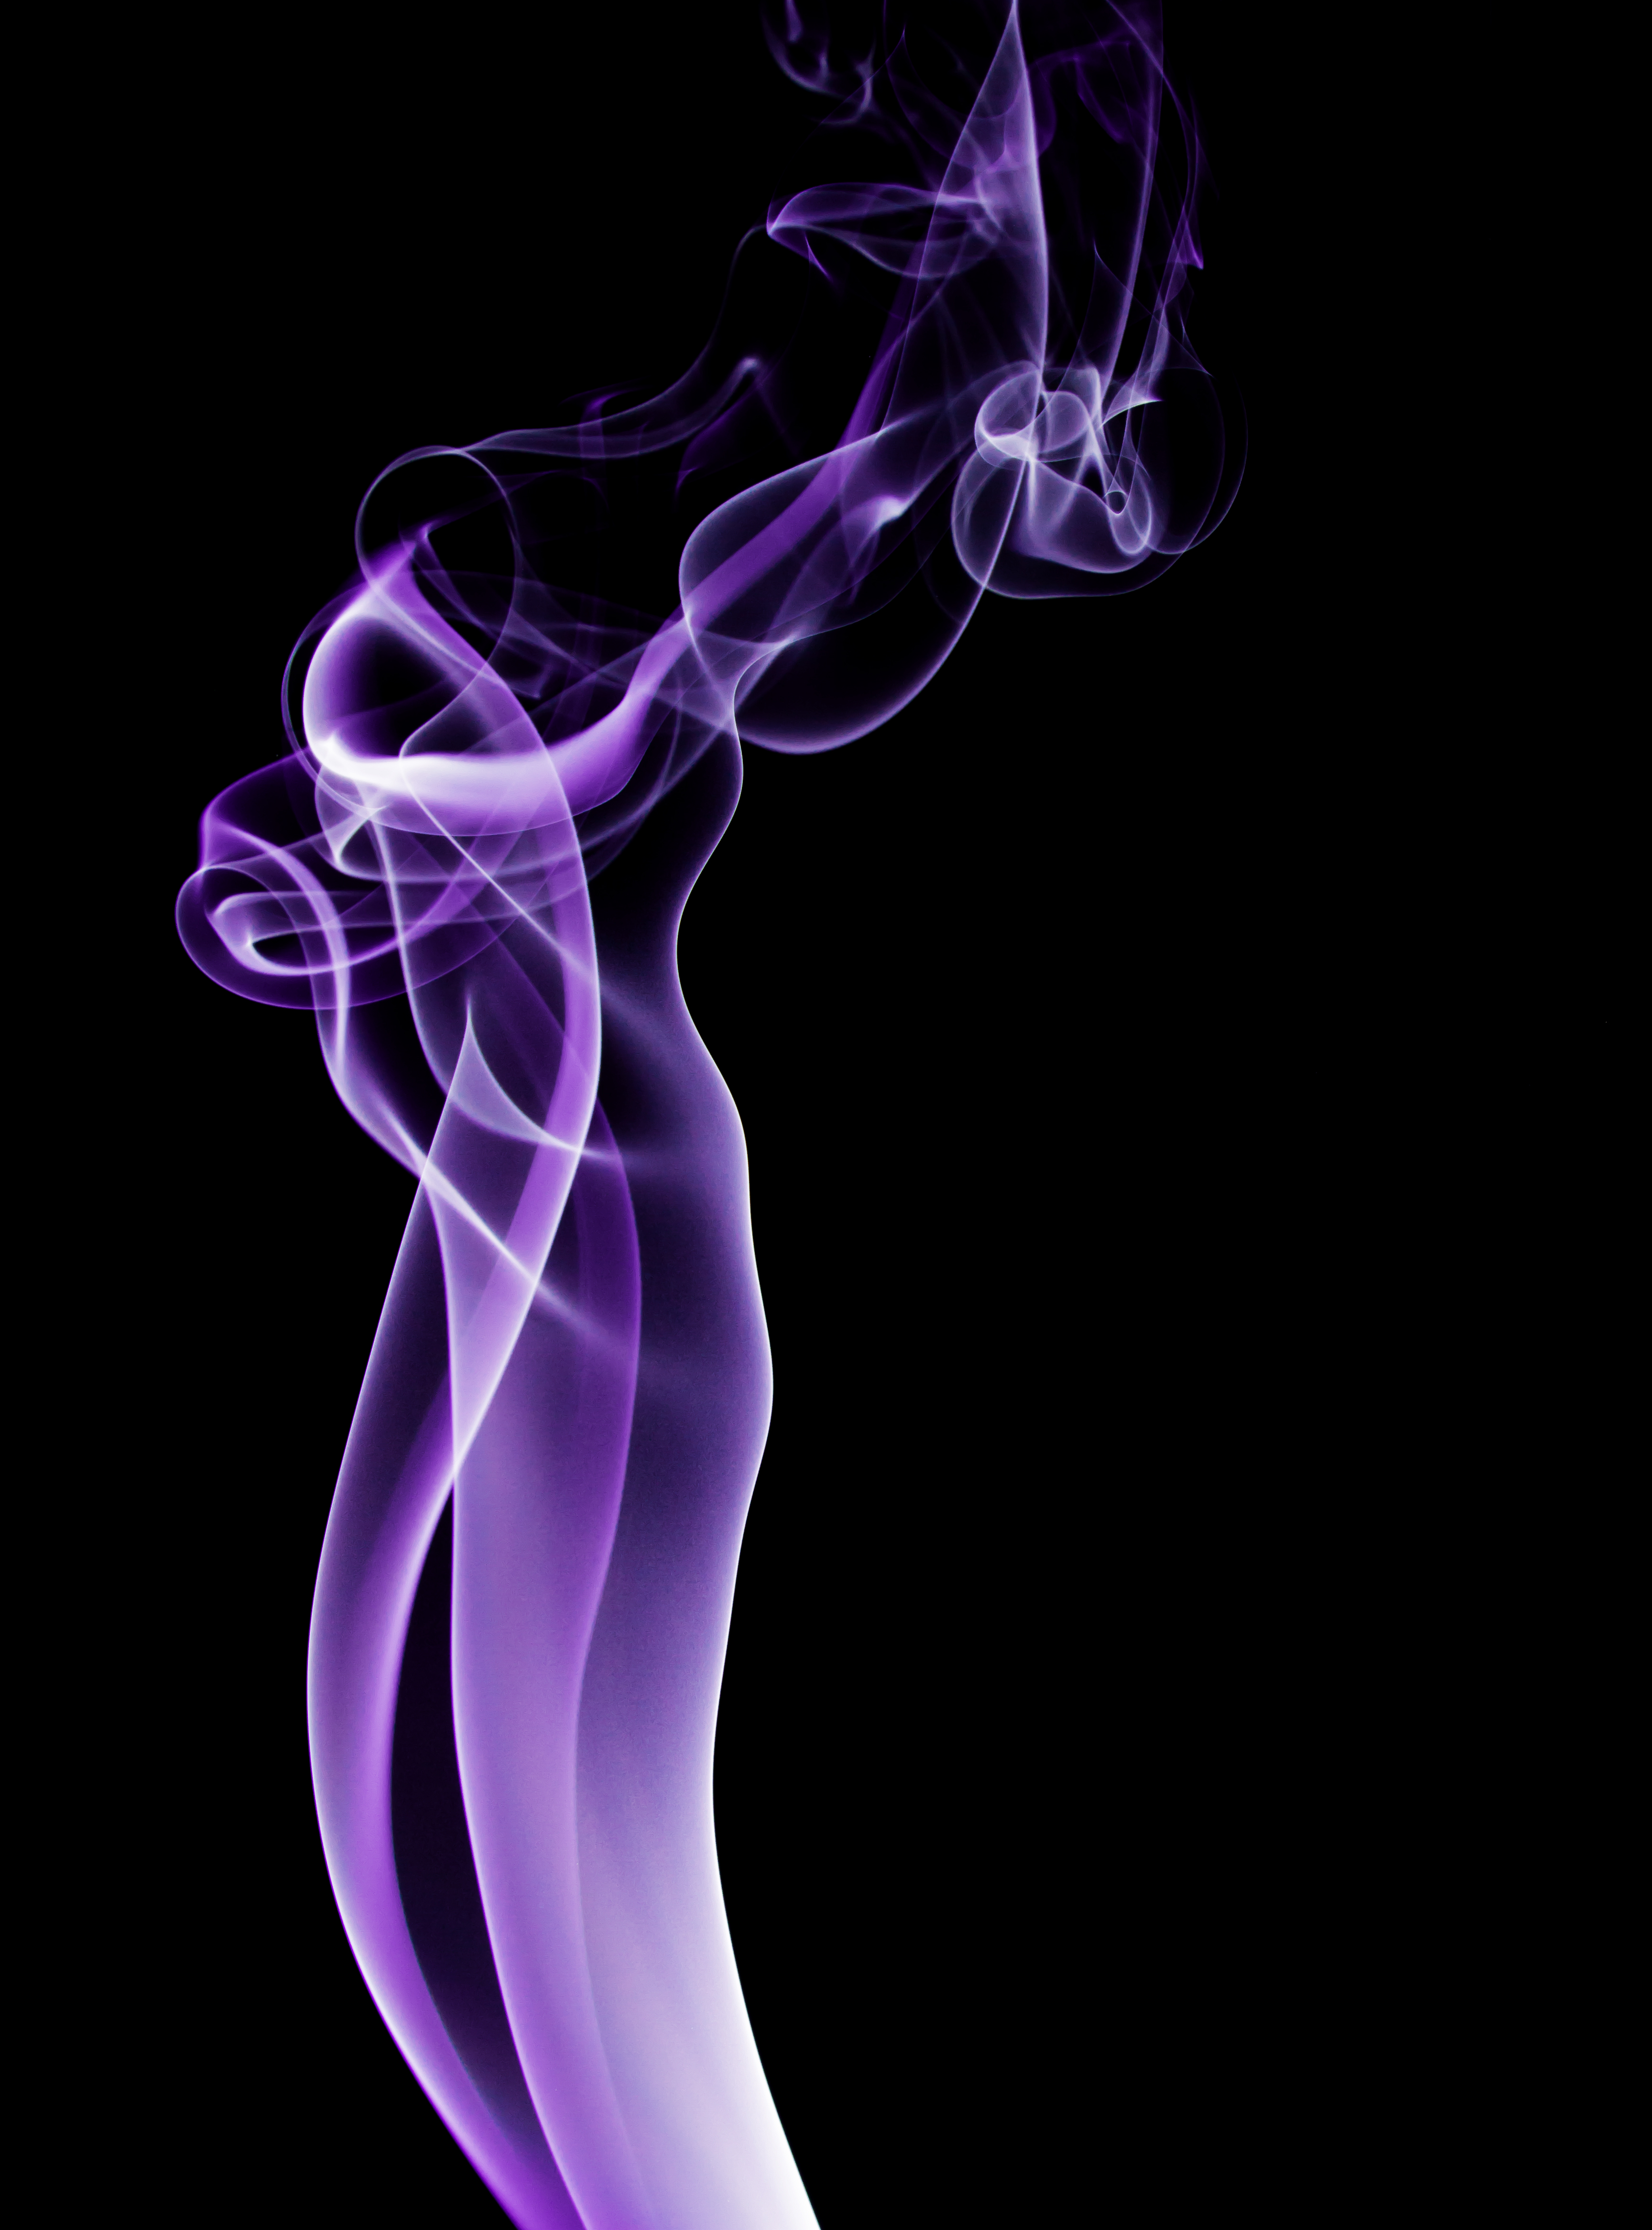 Purple Smoke by moose30 on DeviantArt